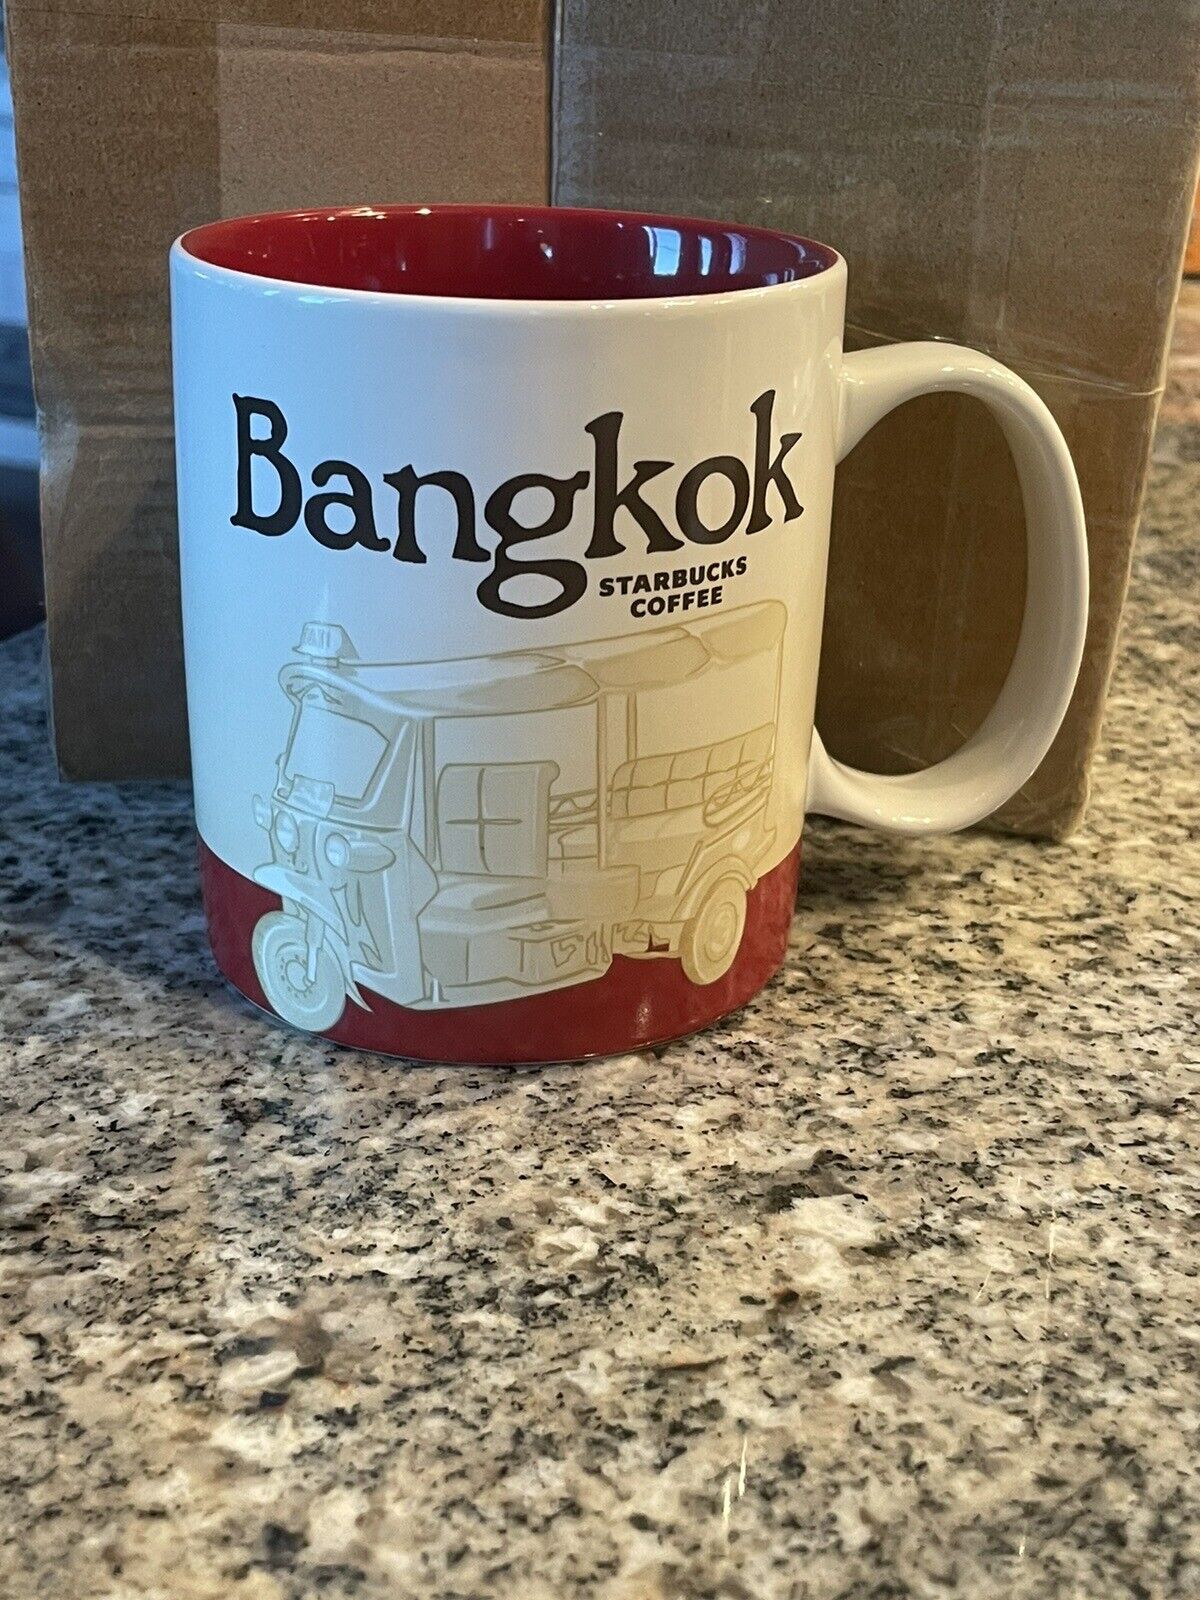 Starbucks Bangkok Coffee Mug 2016 Red 16 Oz Collector Series Cup